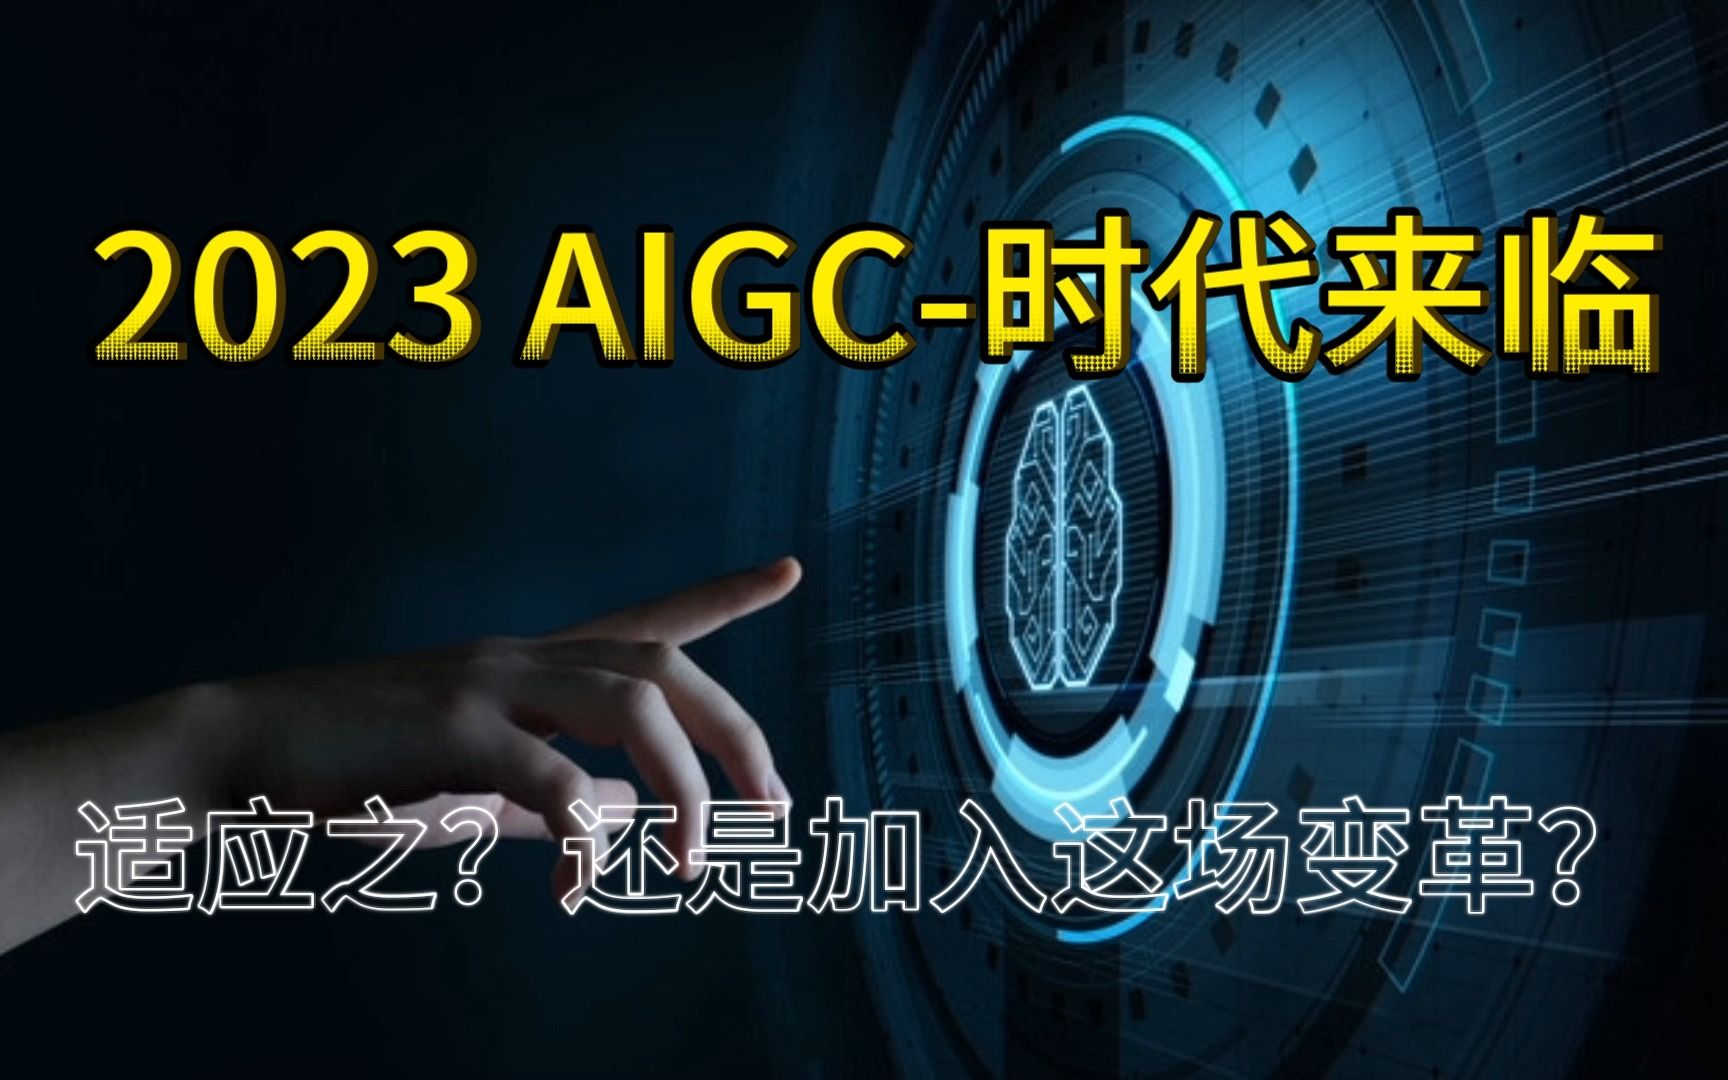 [图]AIGC-生成式人工智能时代【新技术变革来临】（上）：普通人该如何加入？并且运用好这项技术？